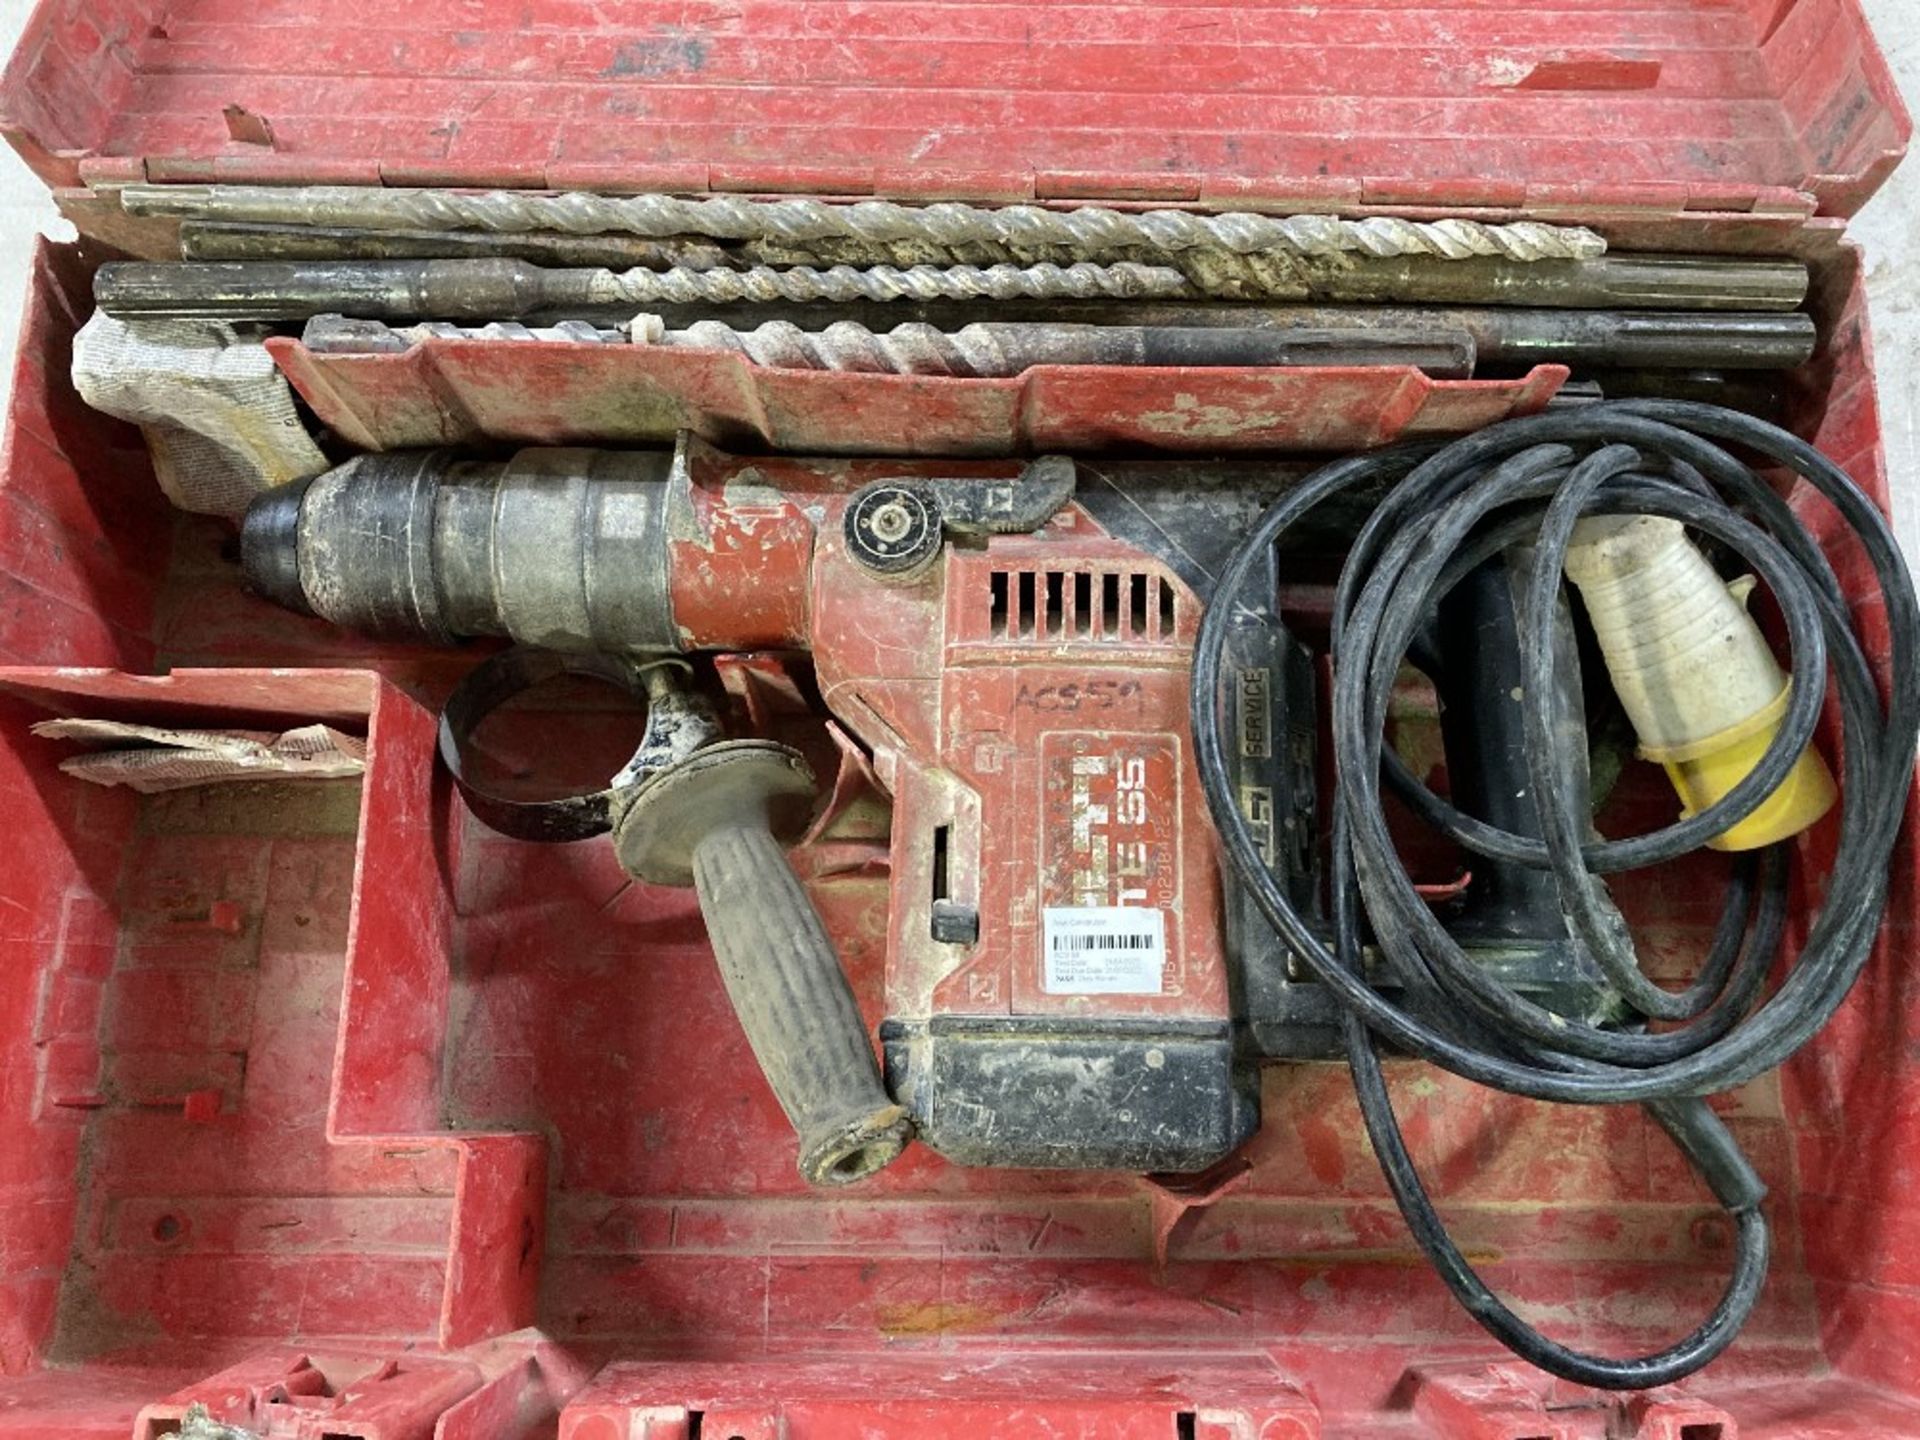 Hilti TE 55 Hammer Drill - Image 2 of 3